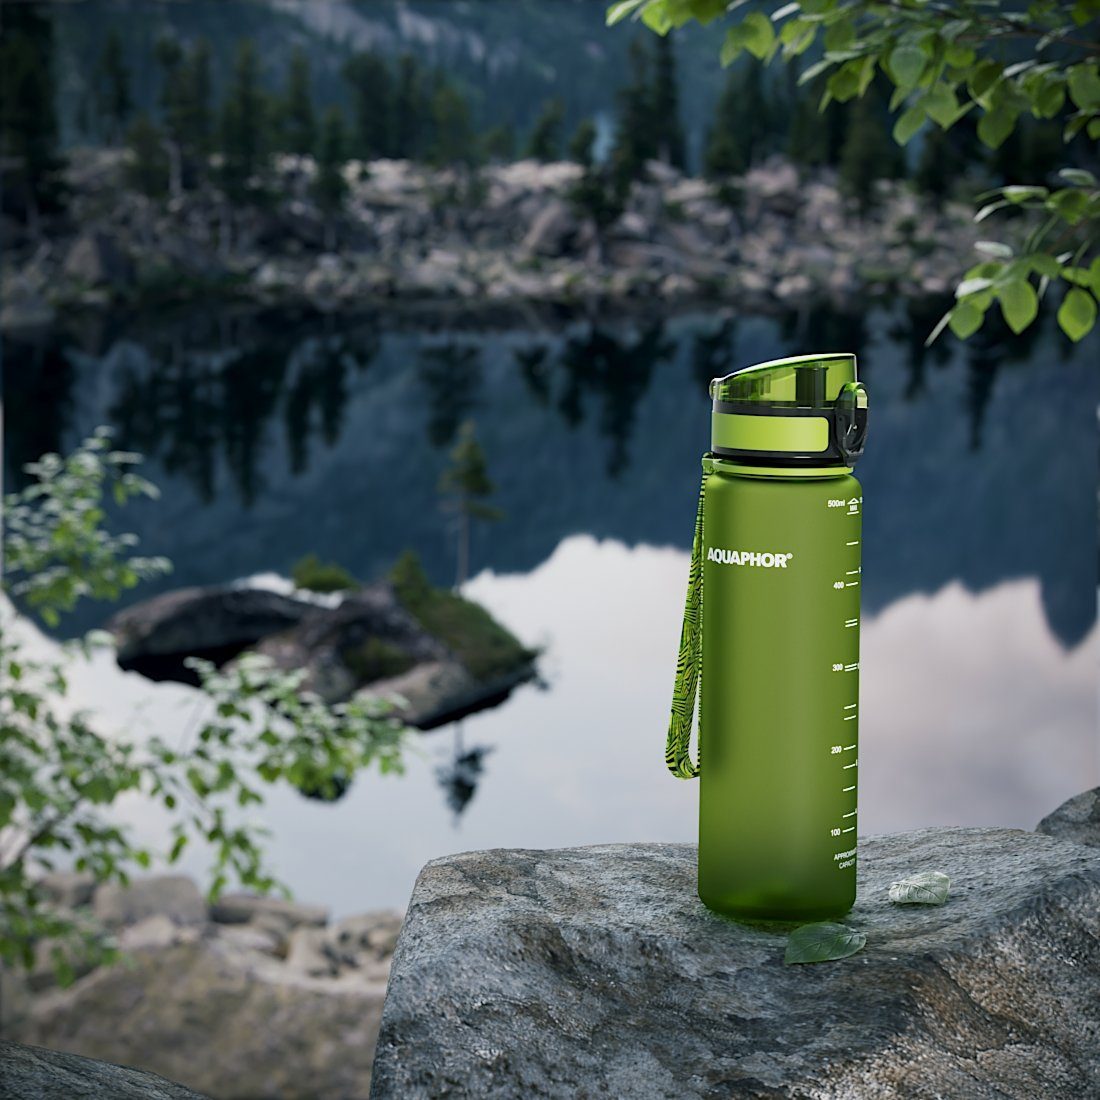 Tritan BPA-frei, für Wasserfilter AQUAPHOR unterwegs, lime Trinkflasche CITY Aktivkohle mit mit I Filter Flasche I & 500ml. Aus Farbe: